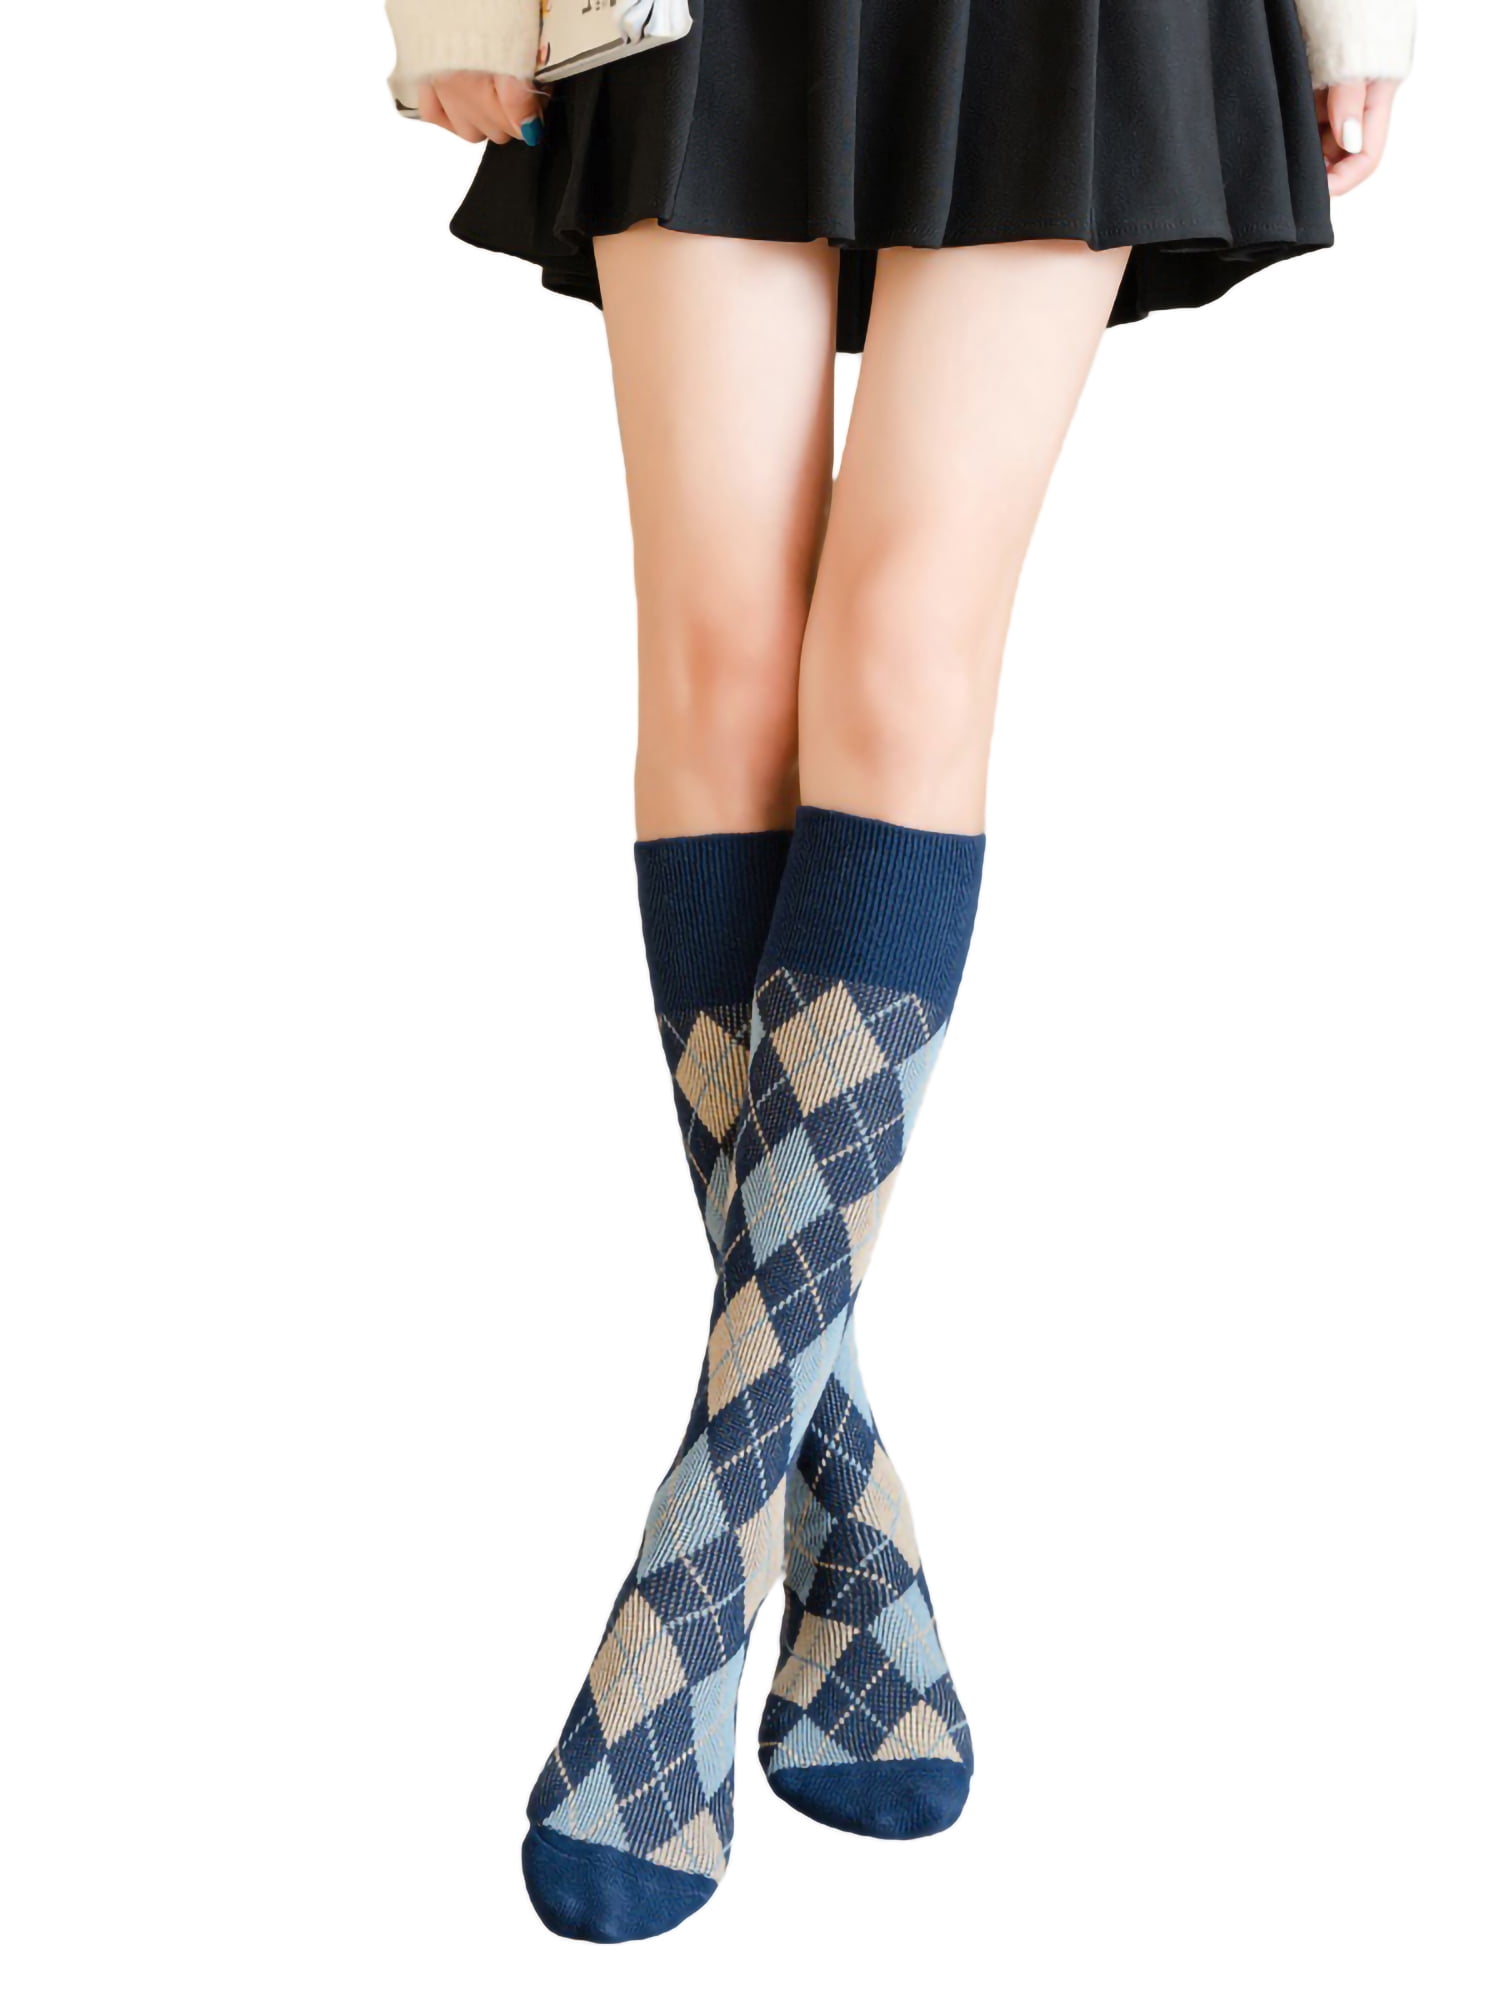 High Elasticity Girl Cotton Knee High Socks Uniform Color Music Women Tube Socks 